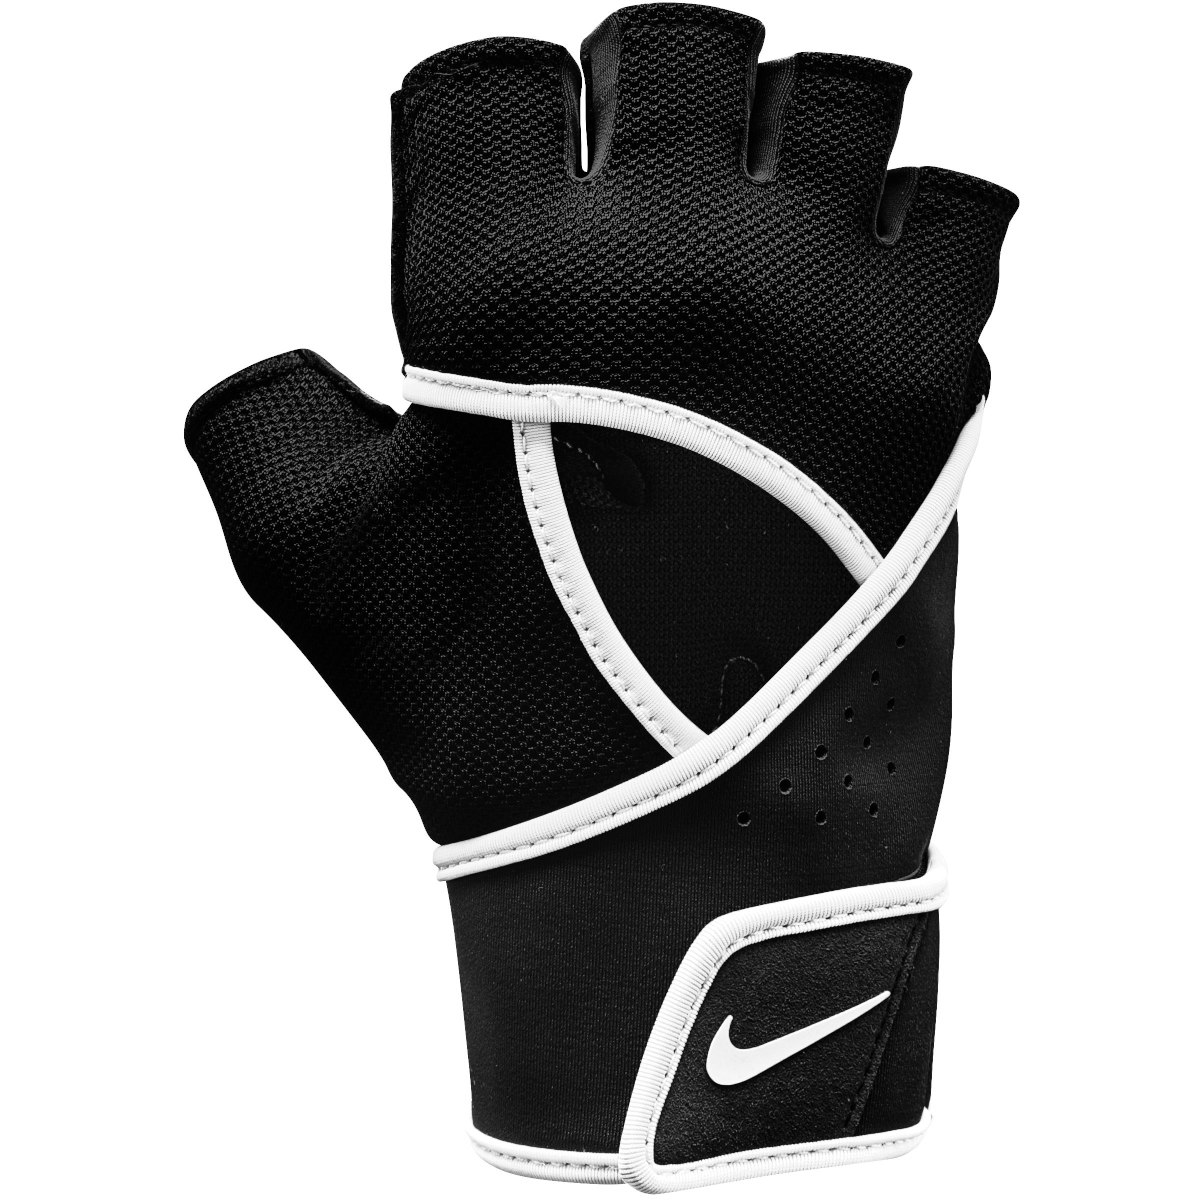 Bild von Nike Gym Premium Fitness Gloves Damen-Handschuhe - black/white 010